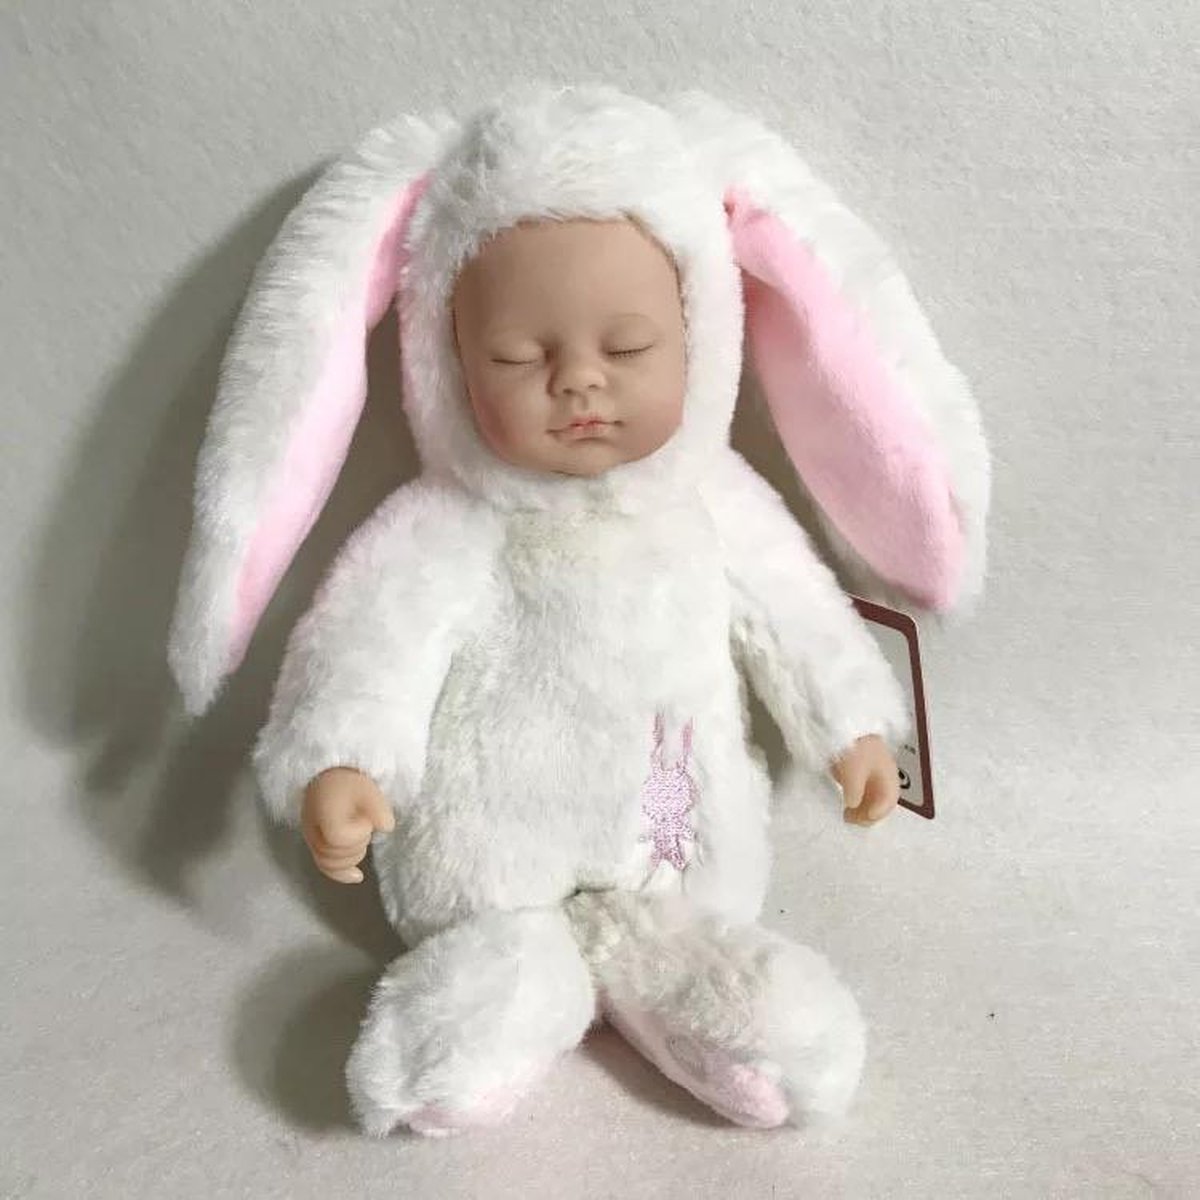 Sleeping baby in wit konijnen pakje - knuffel slaap pop 27cm | bol.com